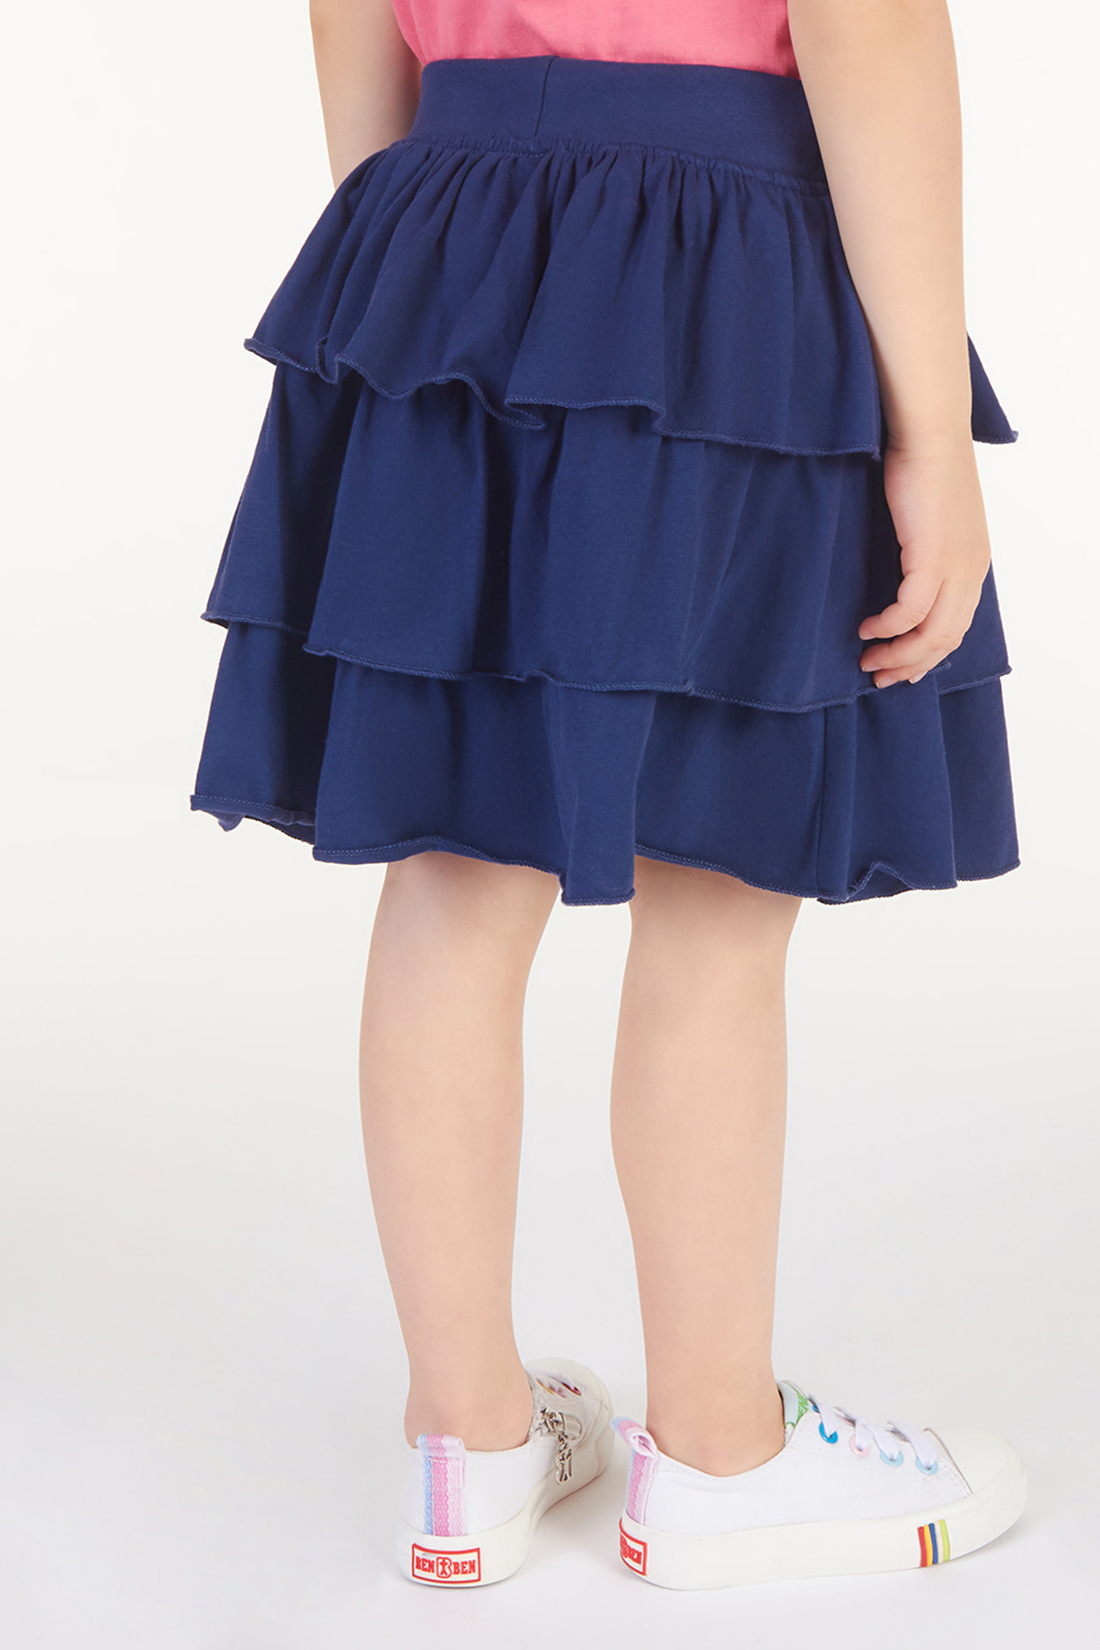 Юбка для девочки (арт. baon BK478004), размер 98-104, цвет синий Юбка для девочки (арт. baon BK478004) - фото 2